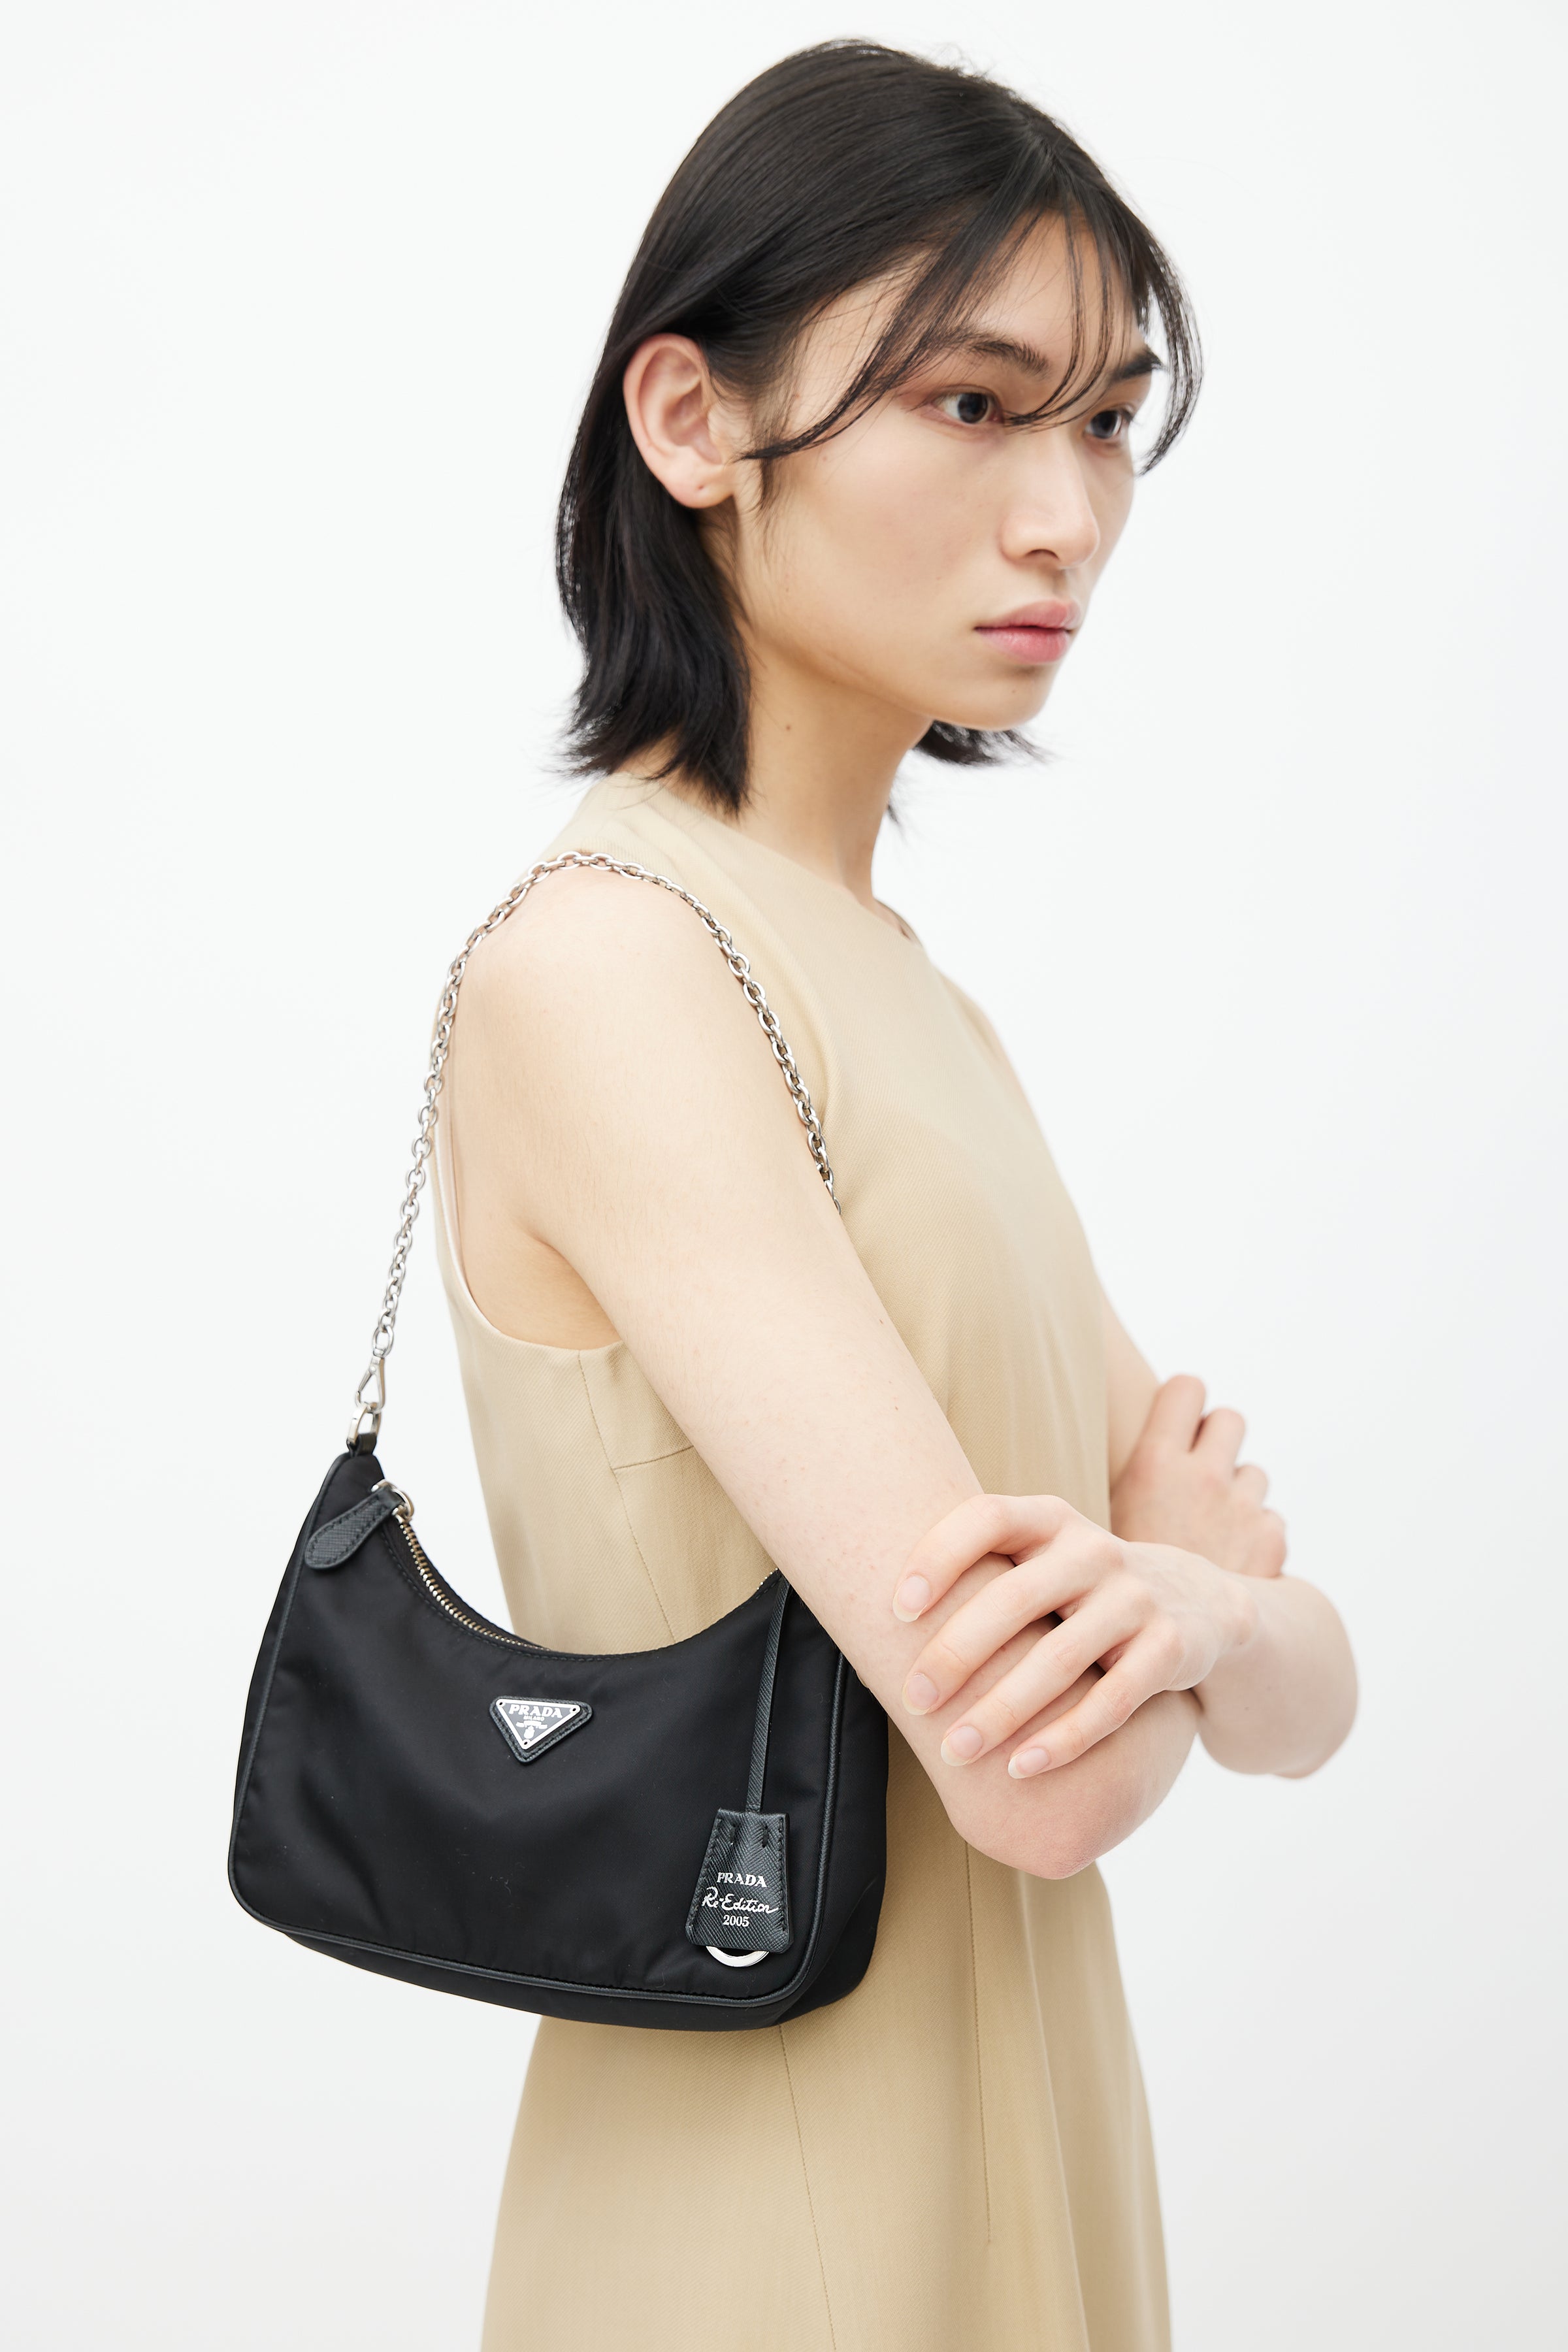 Prada // Black Saffiano Small Galleria Bag – VSP Consignment